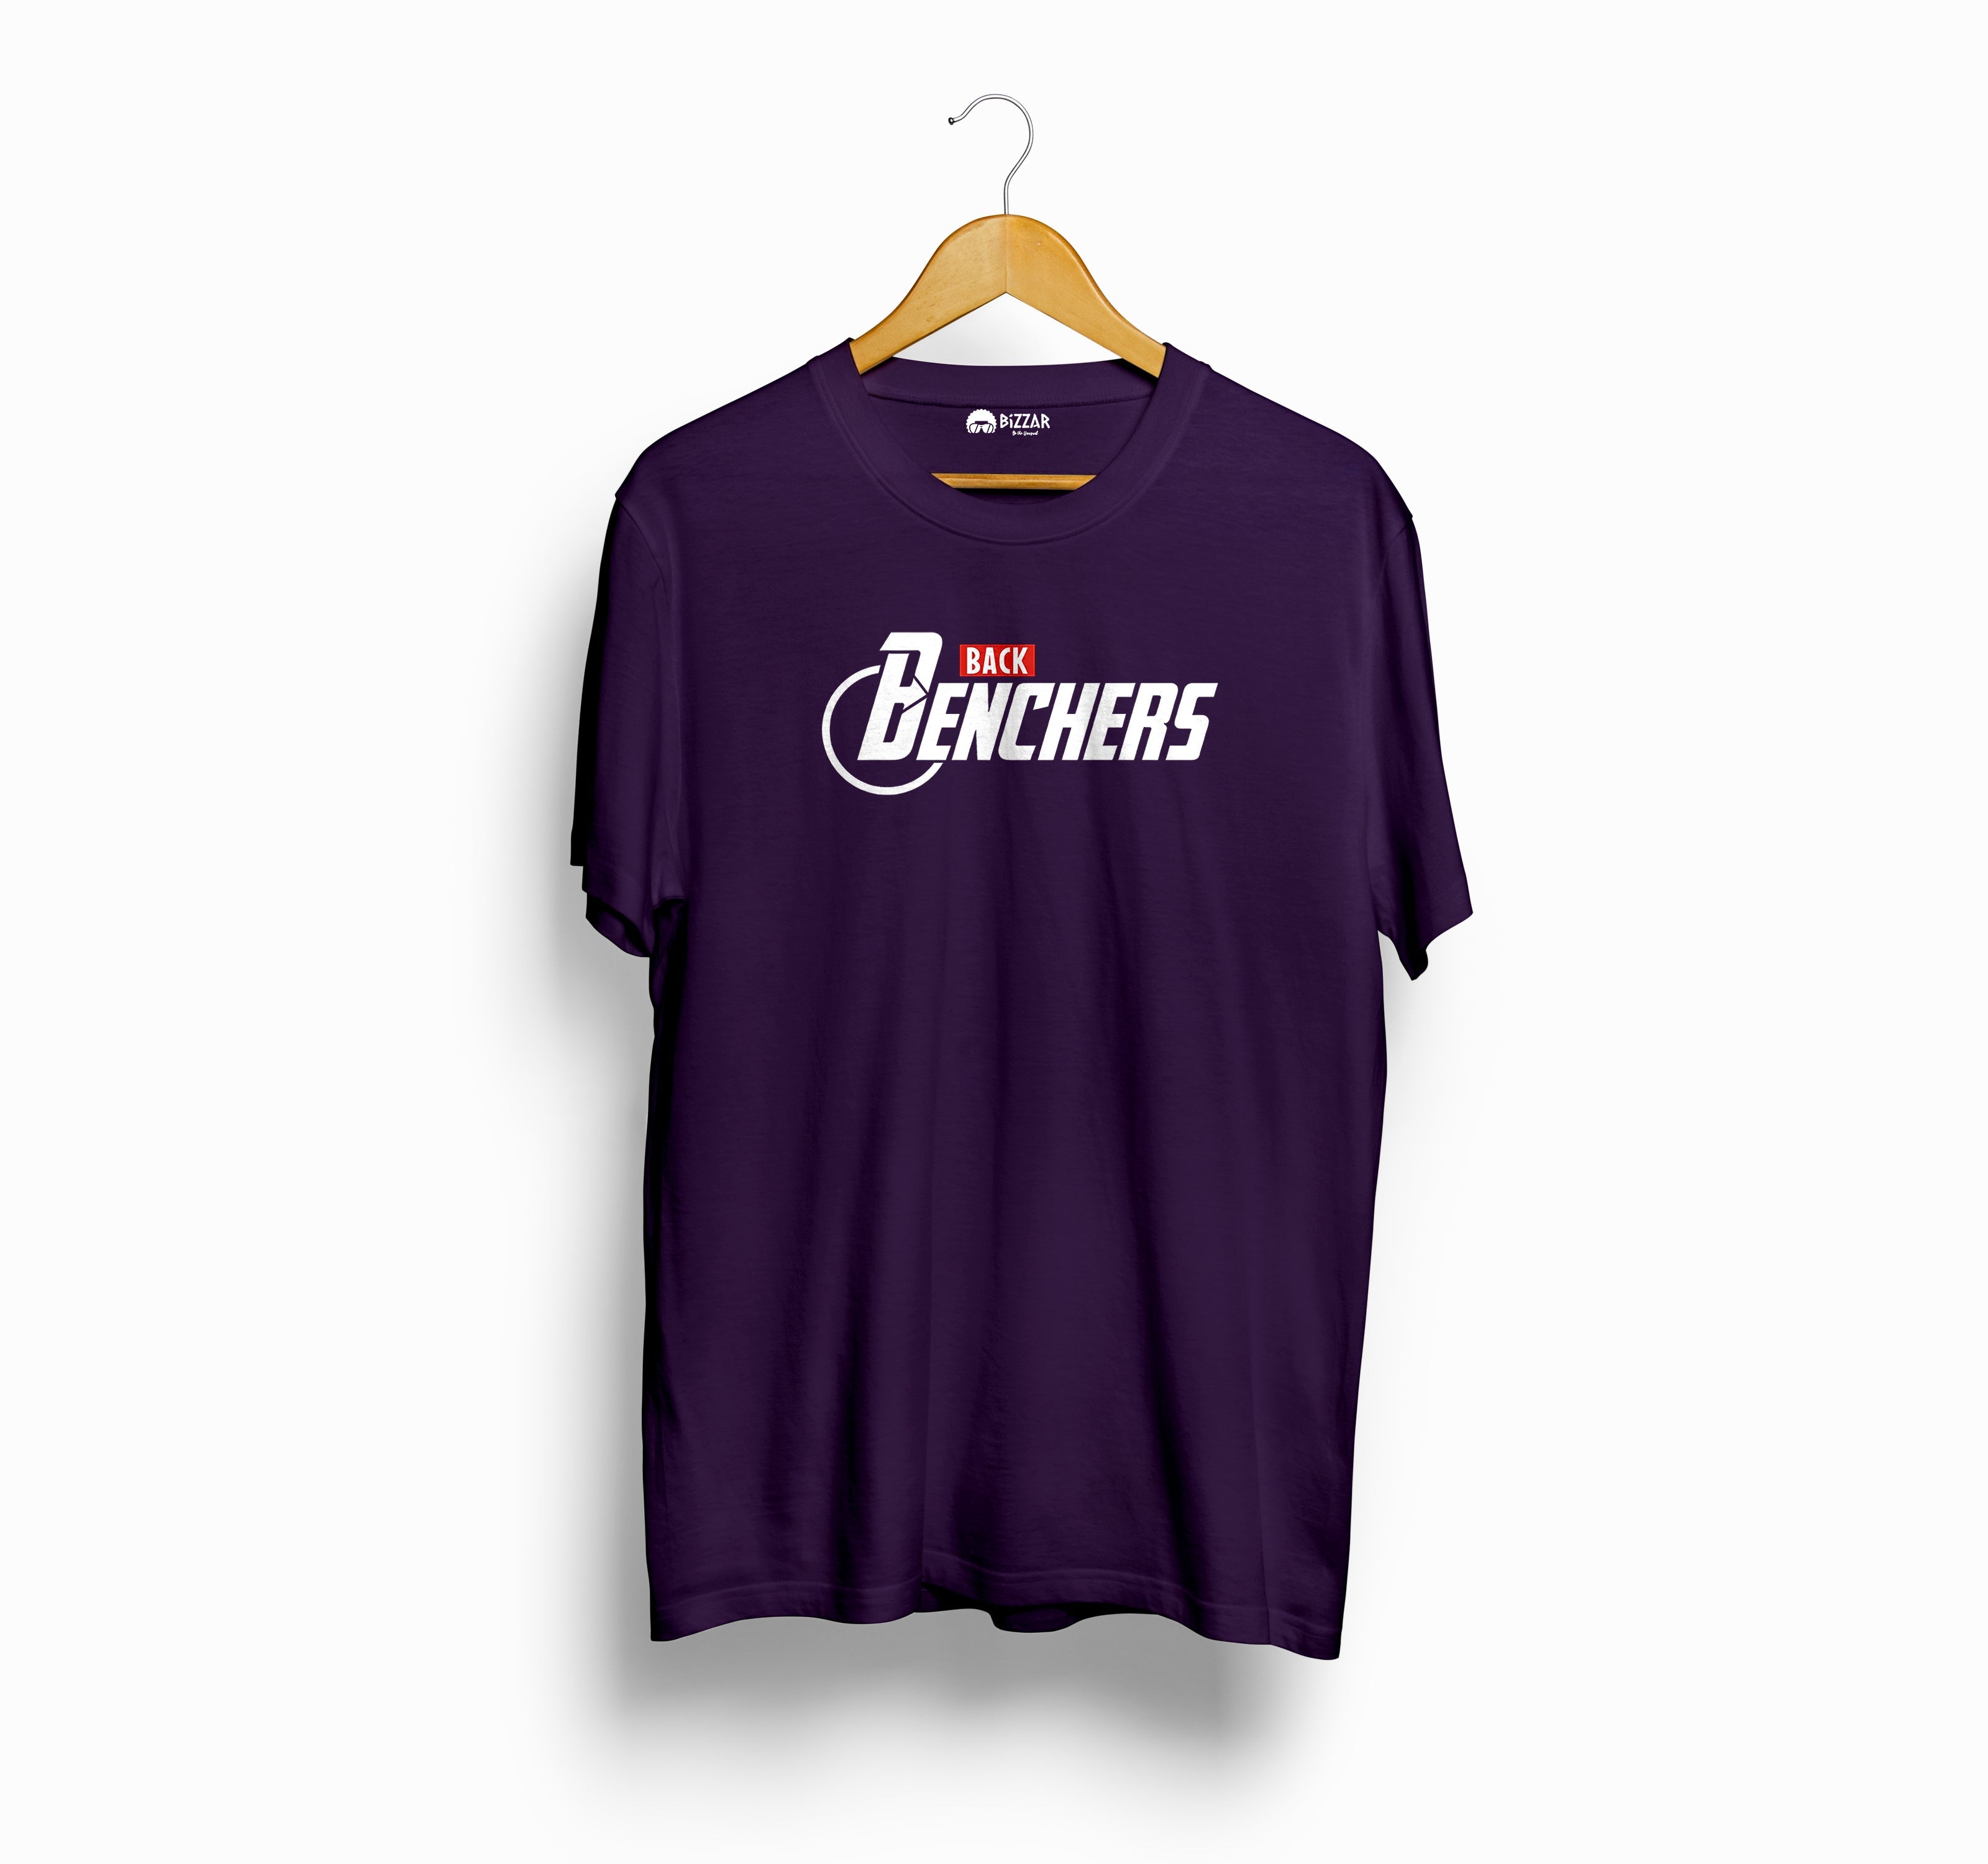 Bizzar's Back Bencher's Purple T-Shirt